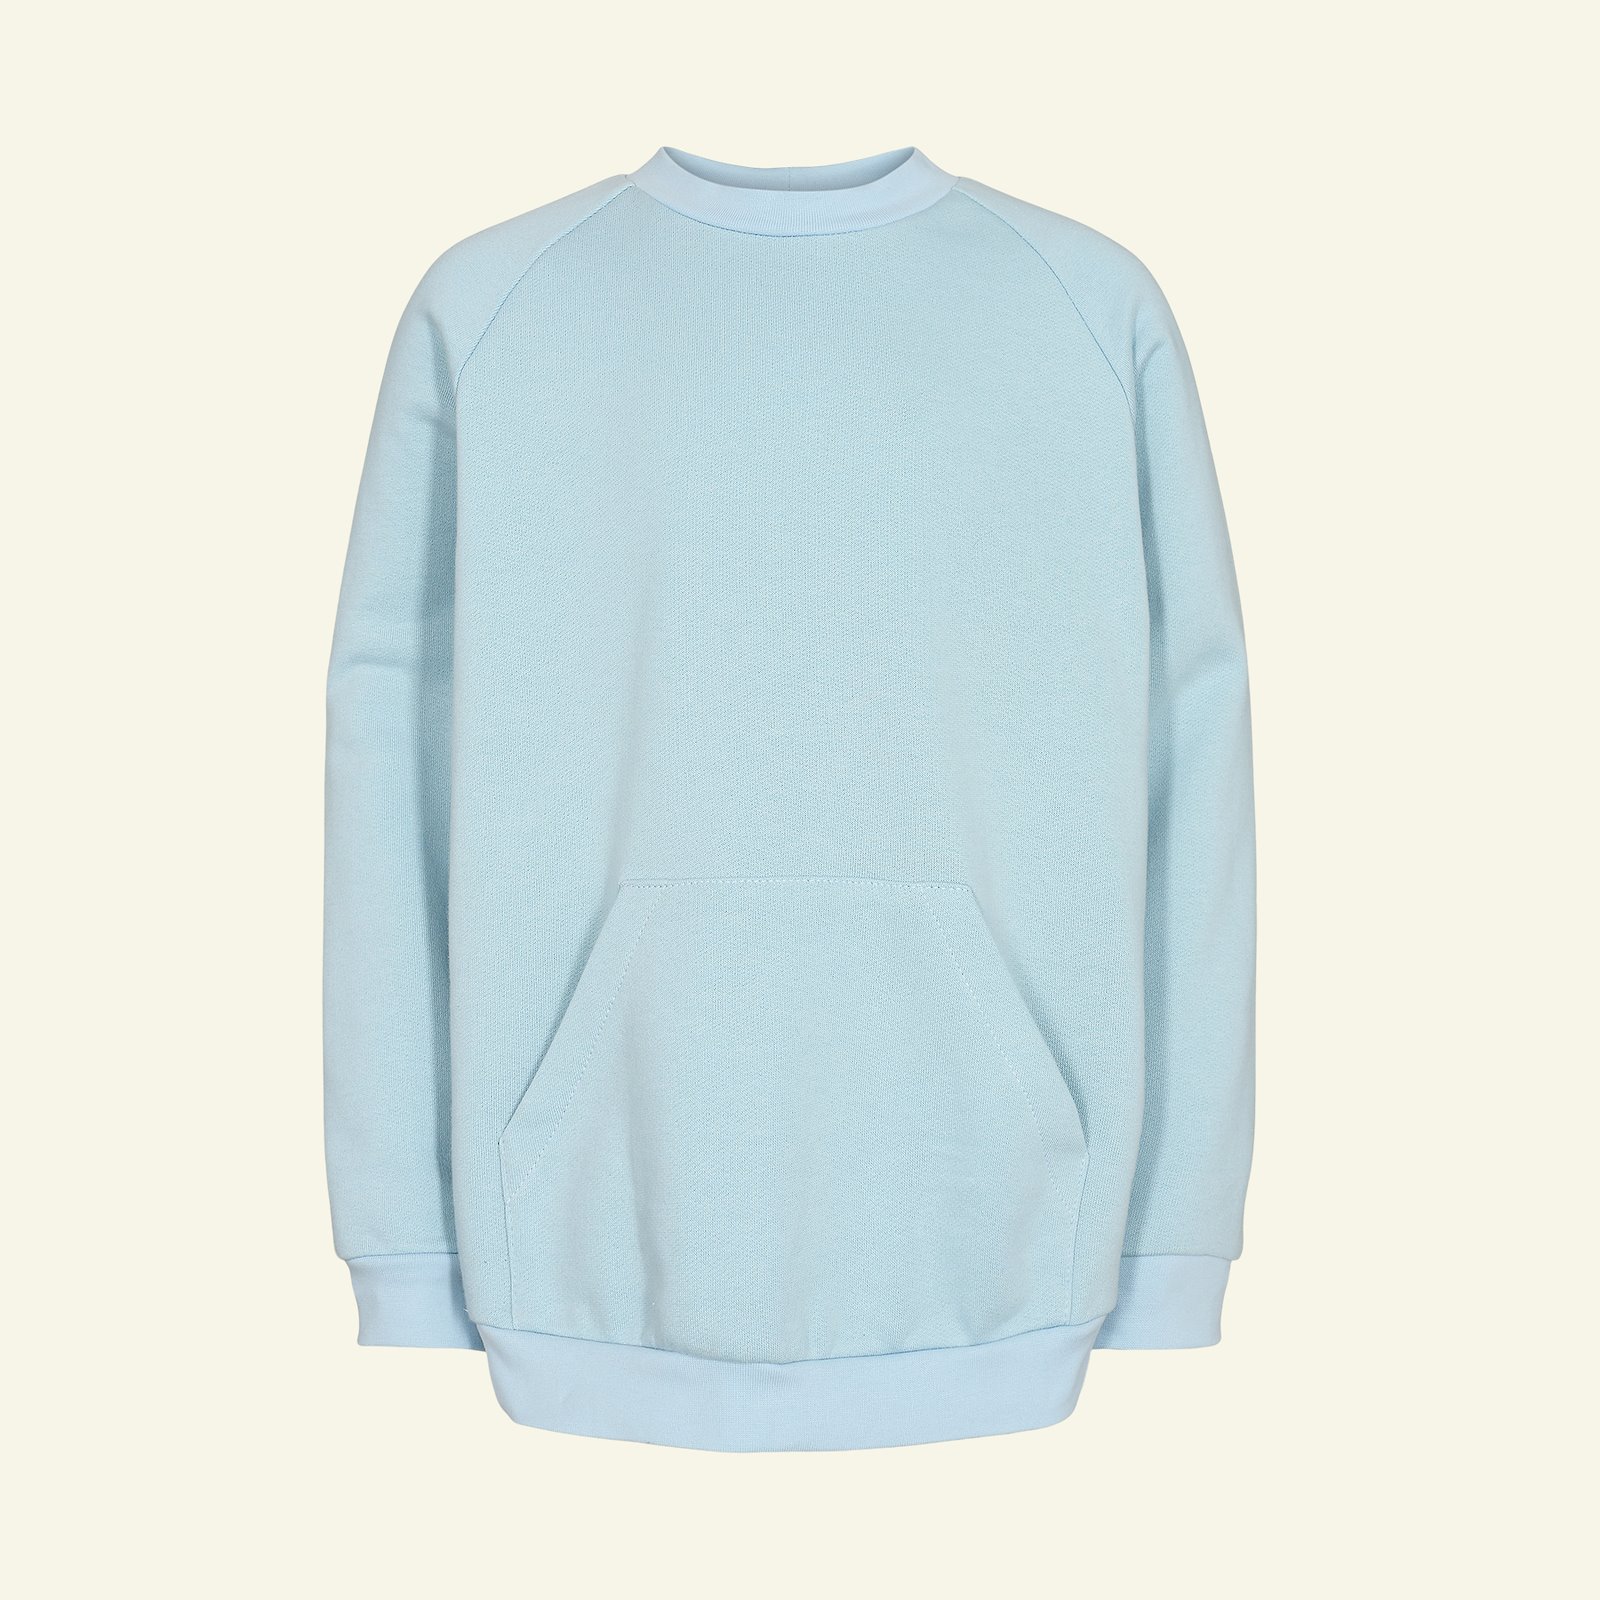 Sweatshirt with raglan sleeves, 104/4y p62015_211777_230601_sskit